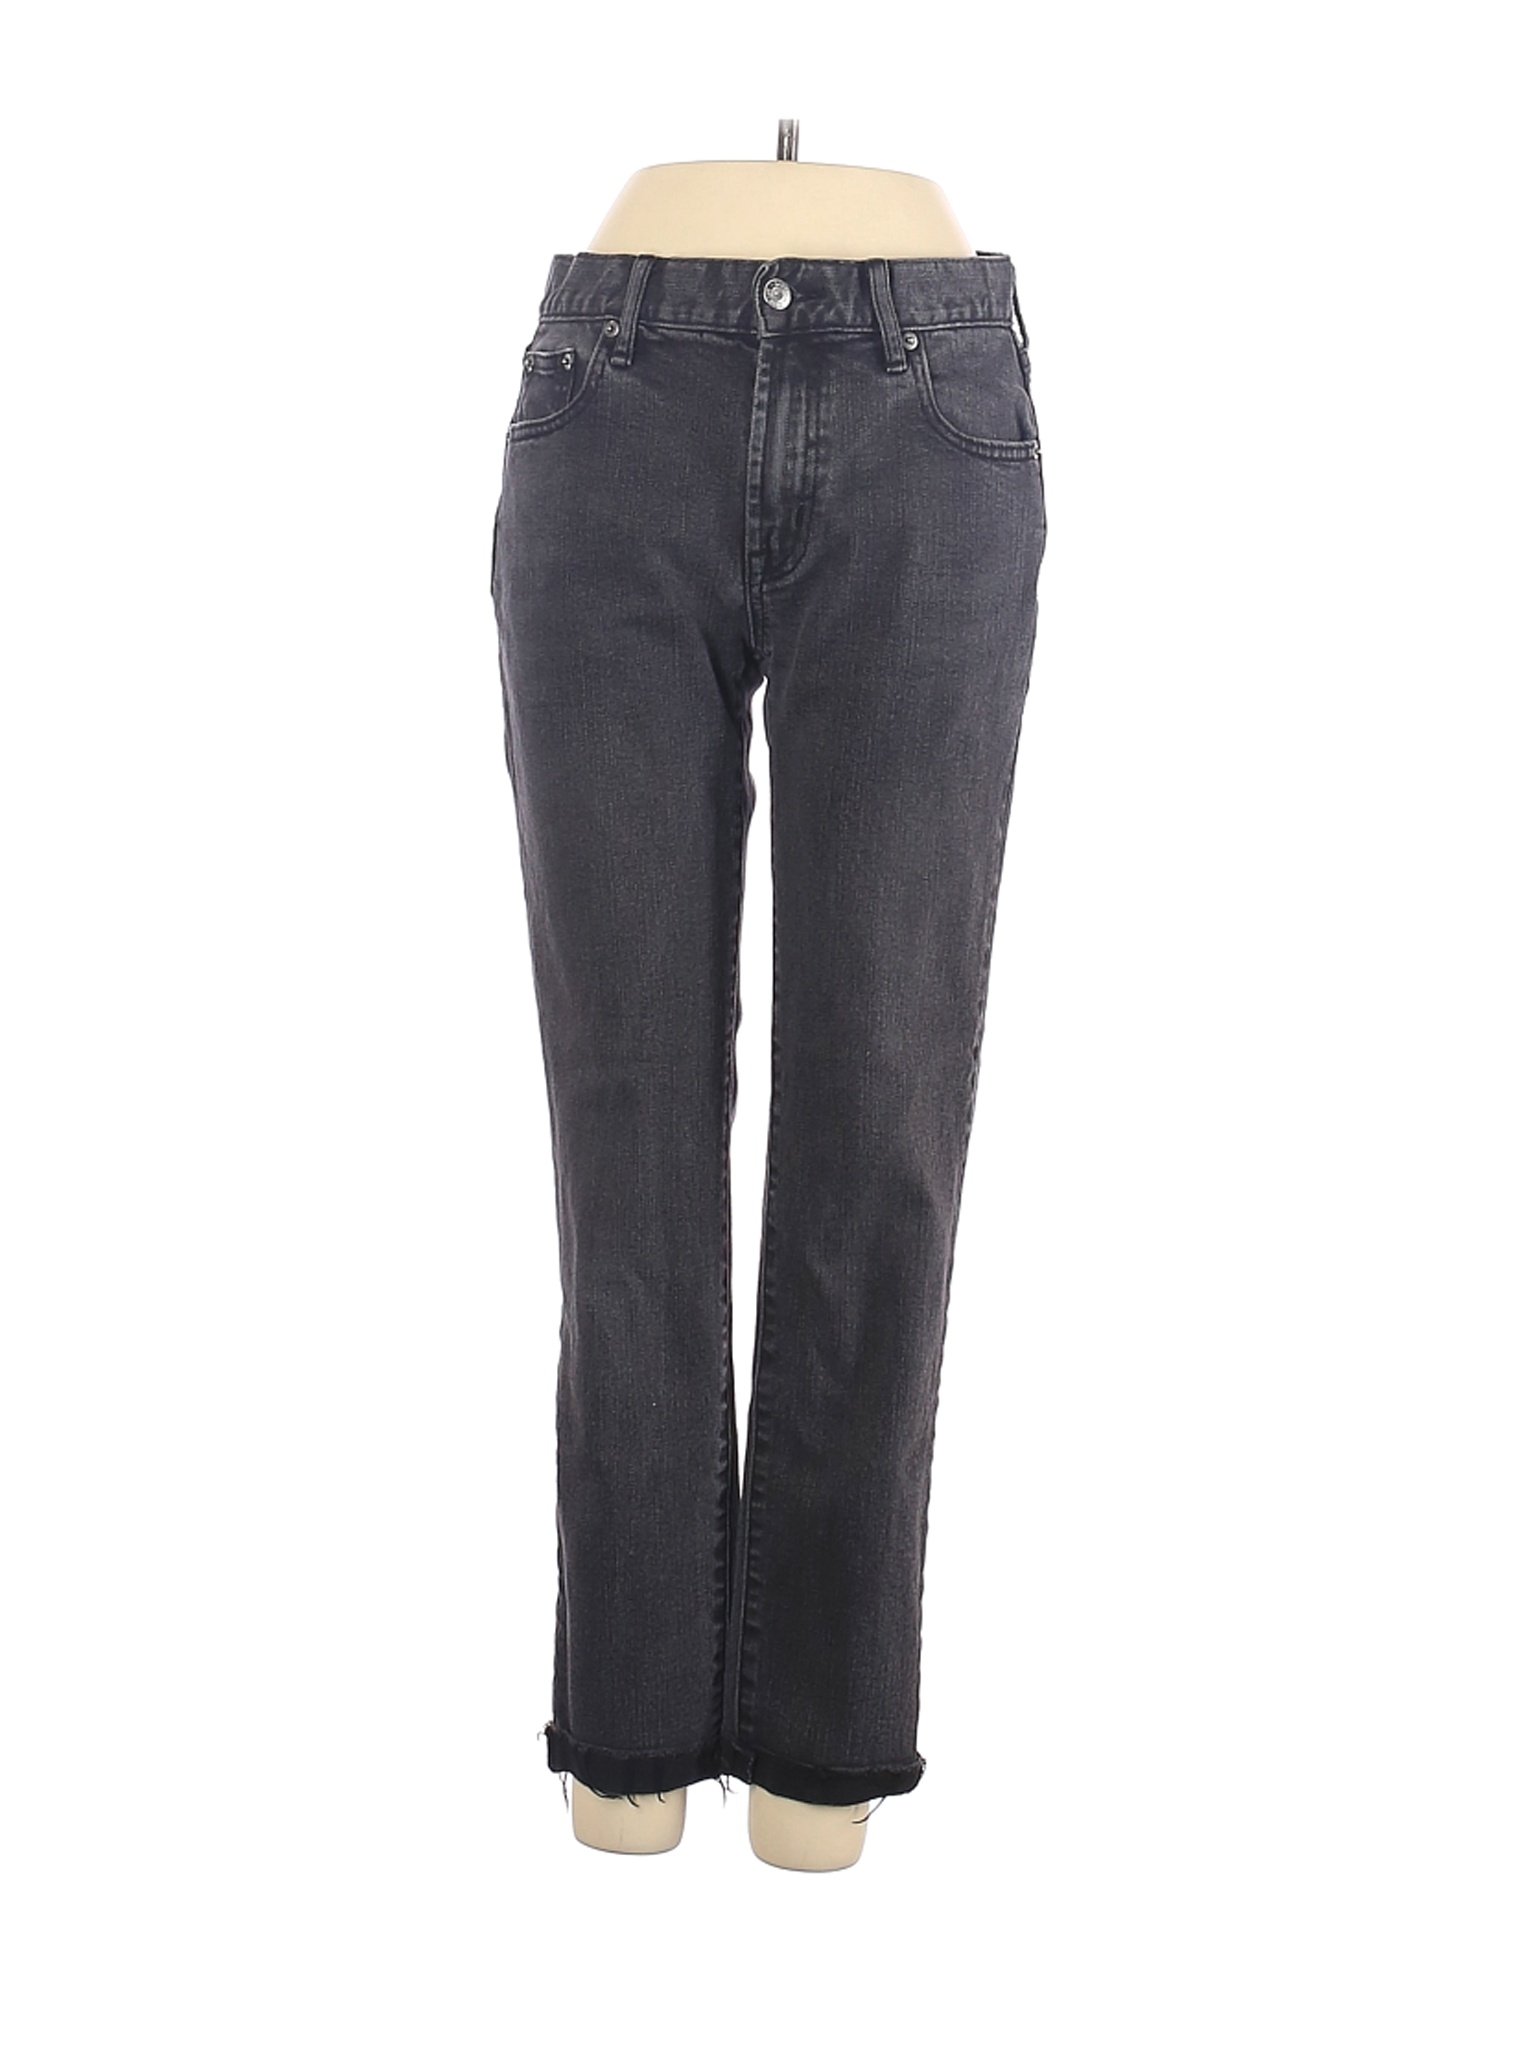 Gap Women Gray Jeans 24W | eBay